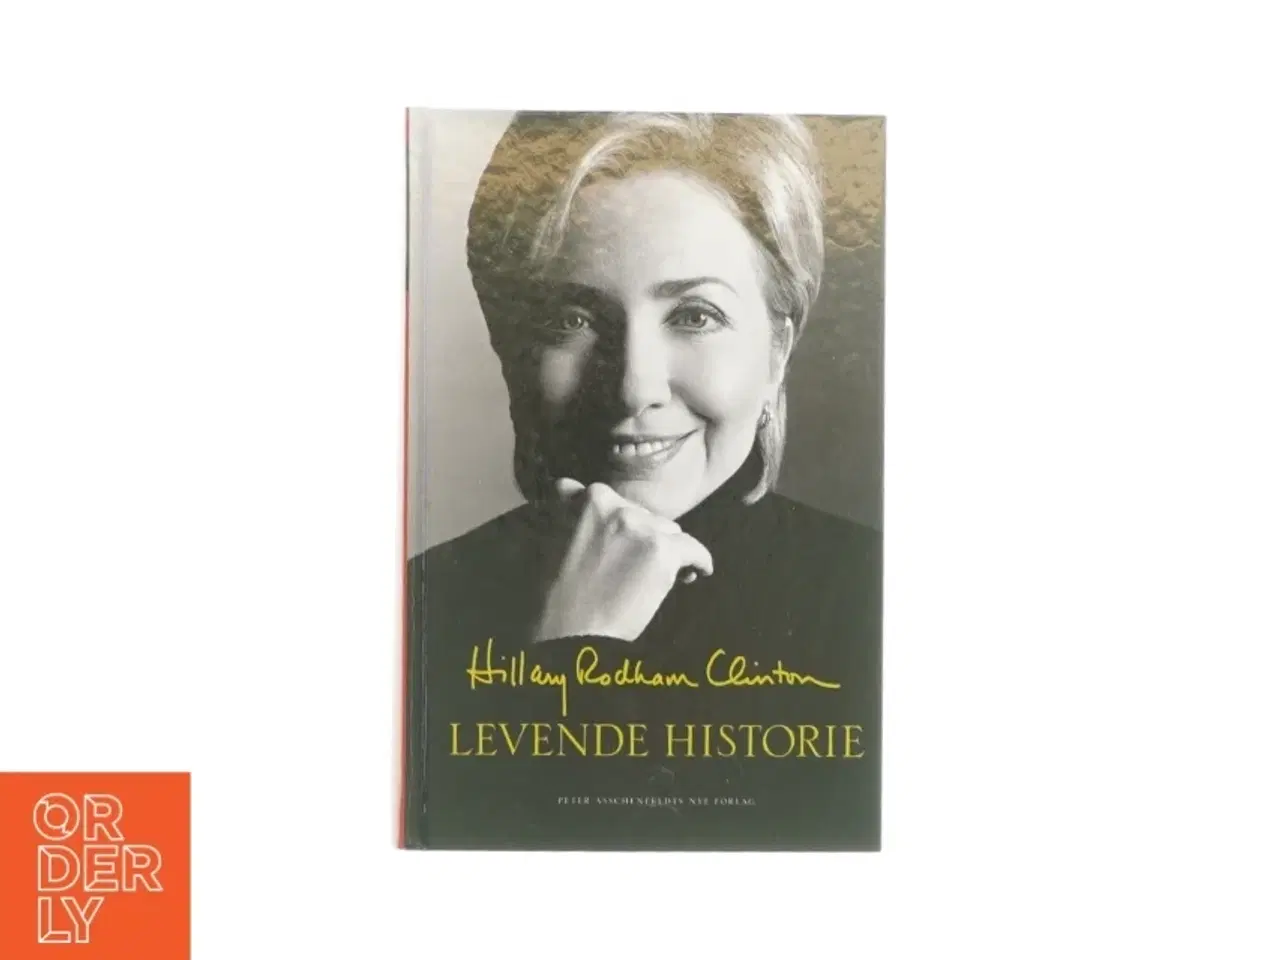 Billede 1 - Levende historie af Hillary rodham Clinton (Bog)